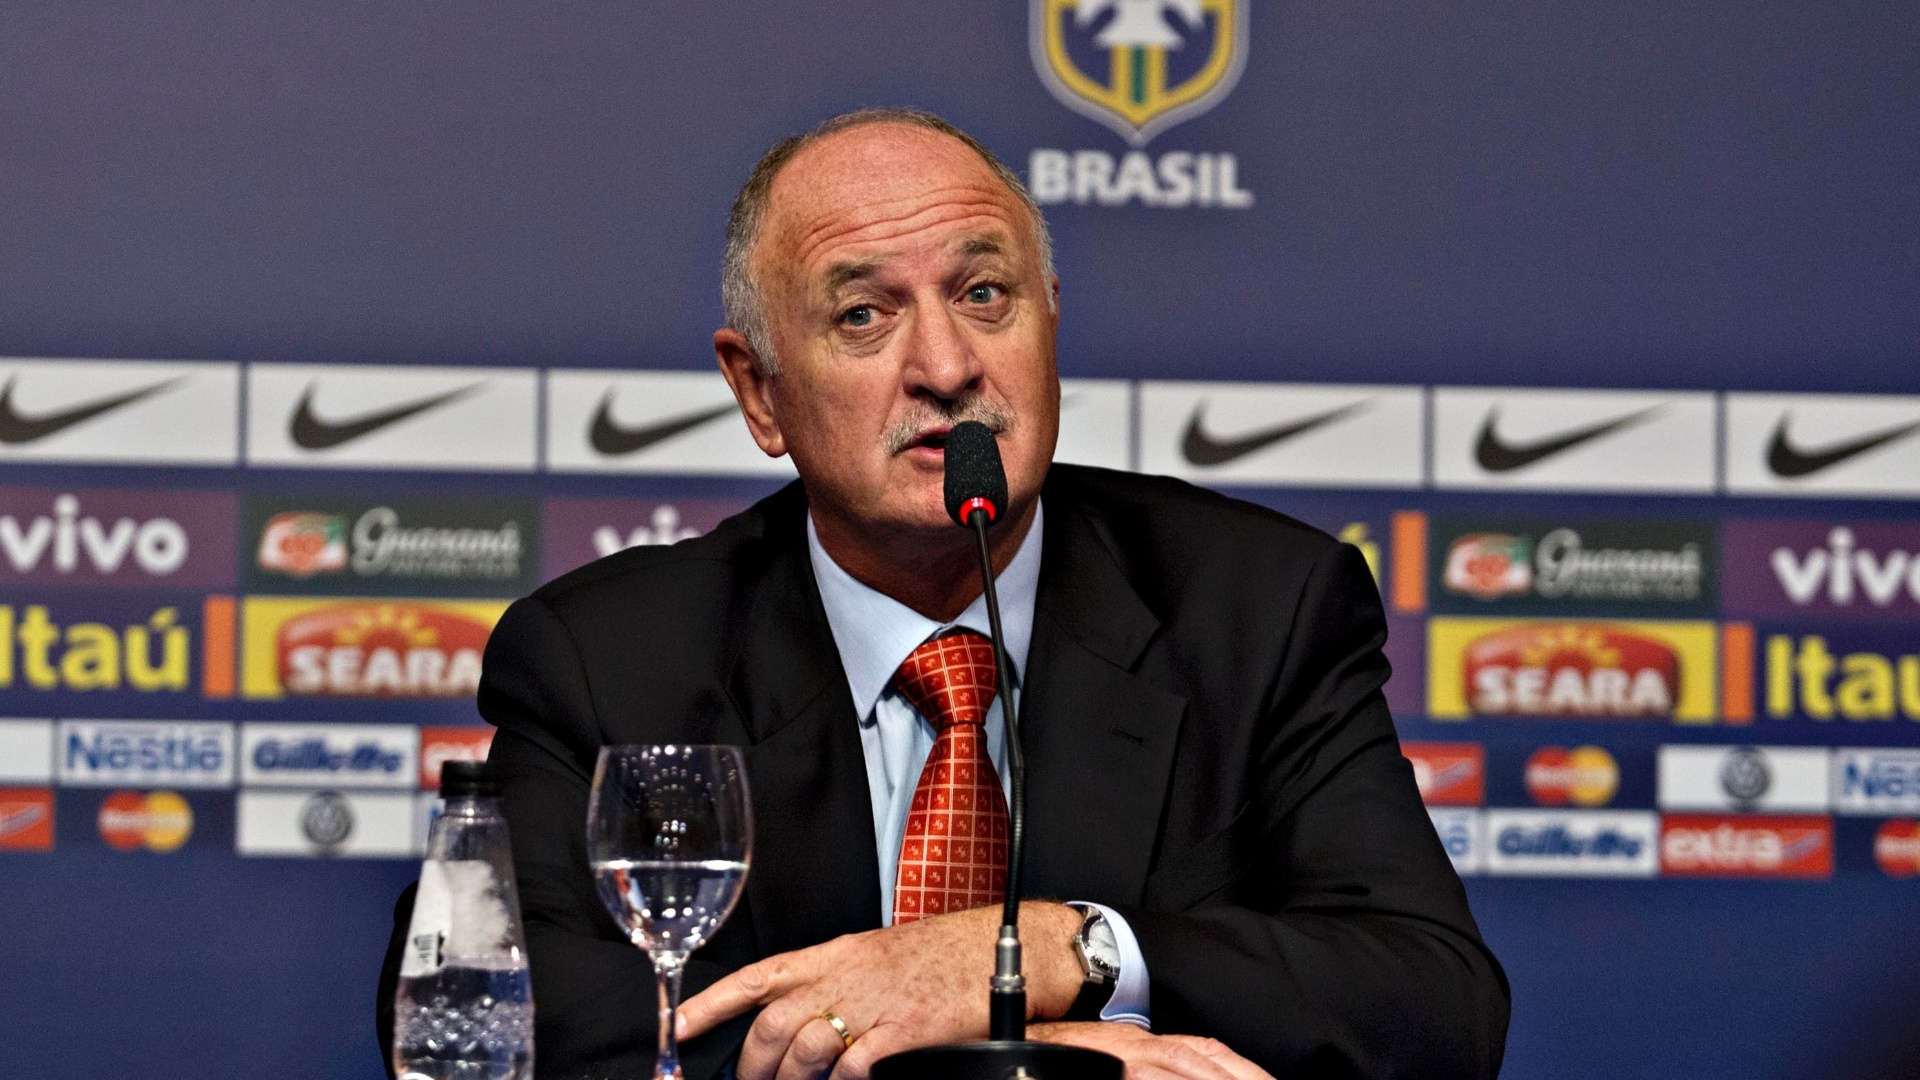 22.jan.2013 - Técnico da seleção brasileira, Luiz Felipe Scolari, fala após anúncio de sua primeira convocação